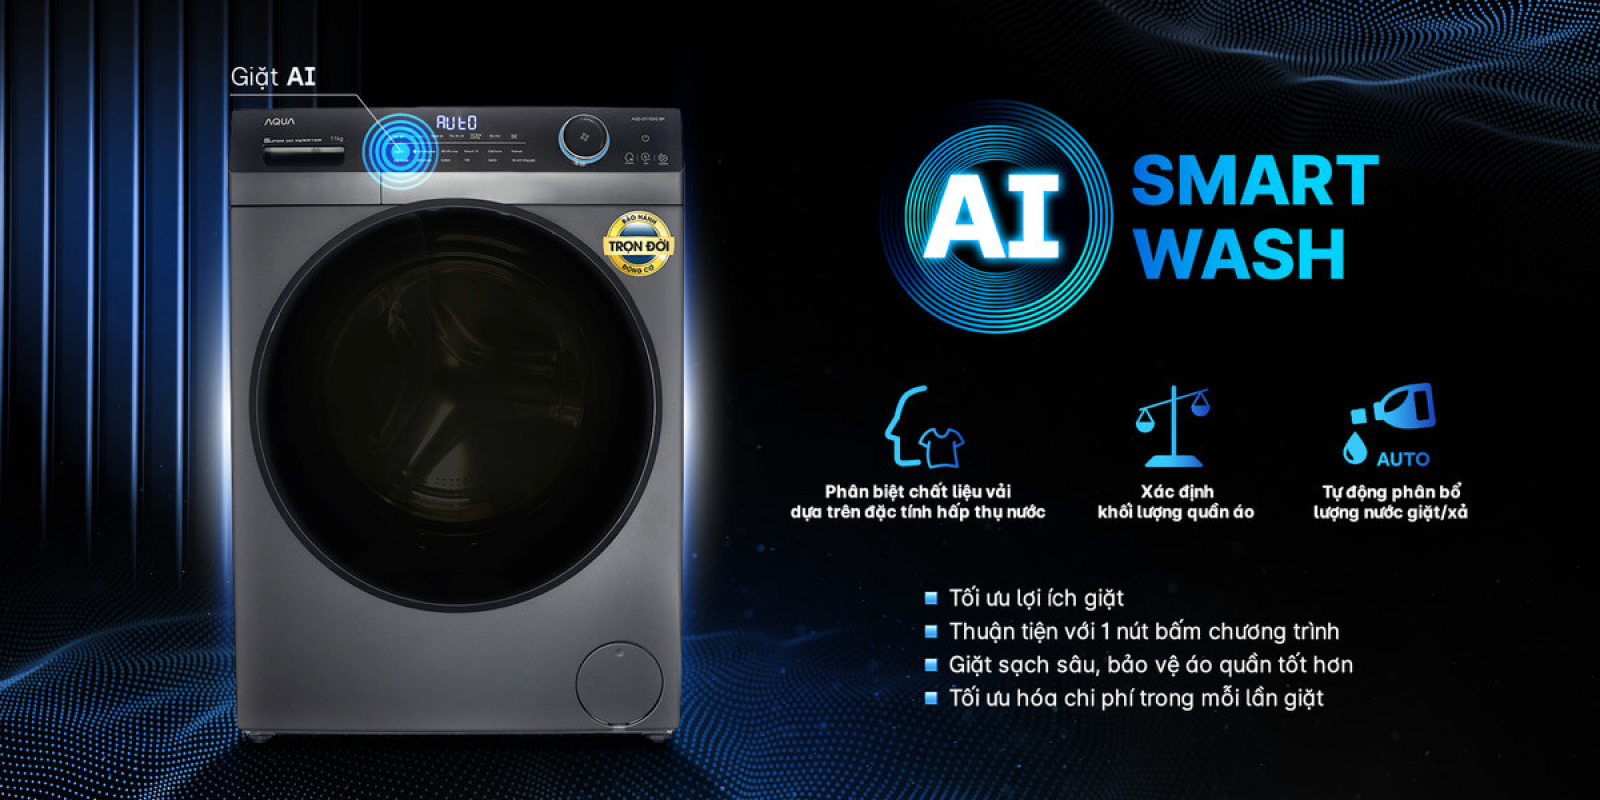 AI Smart wash 4